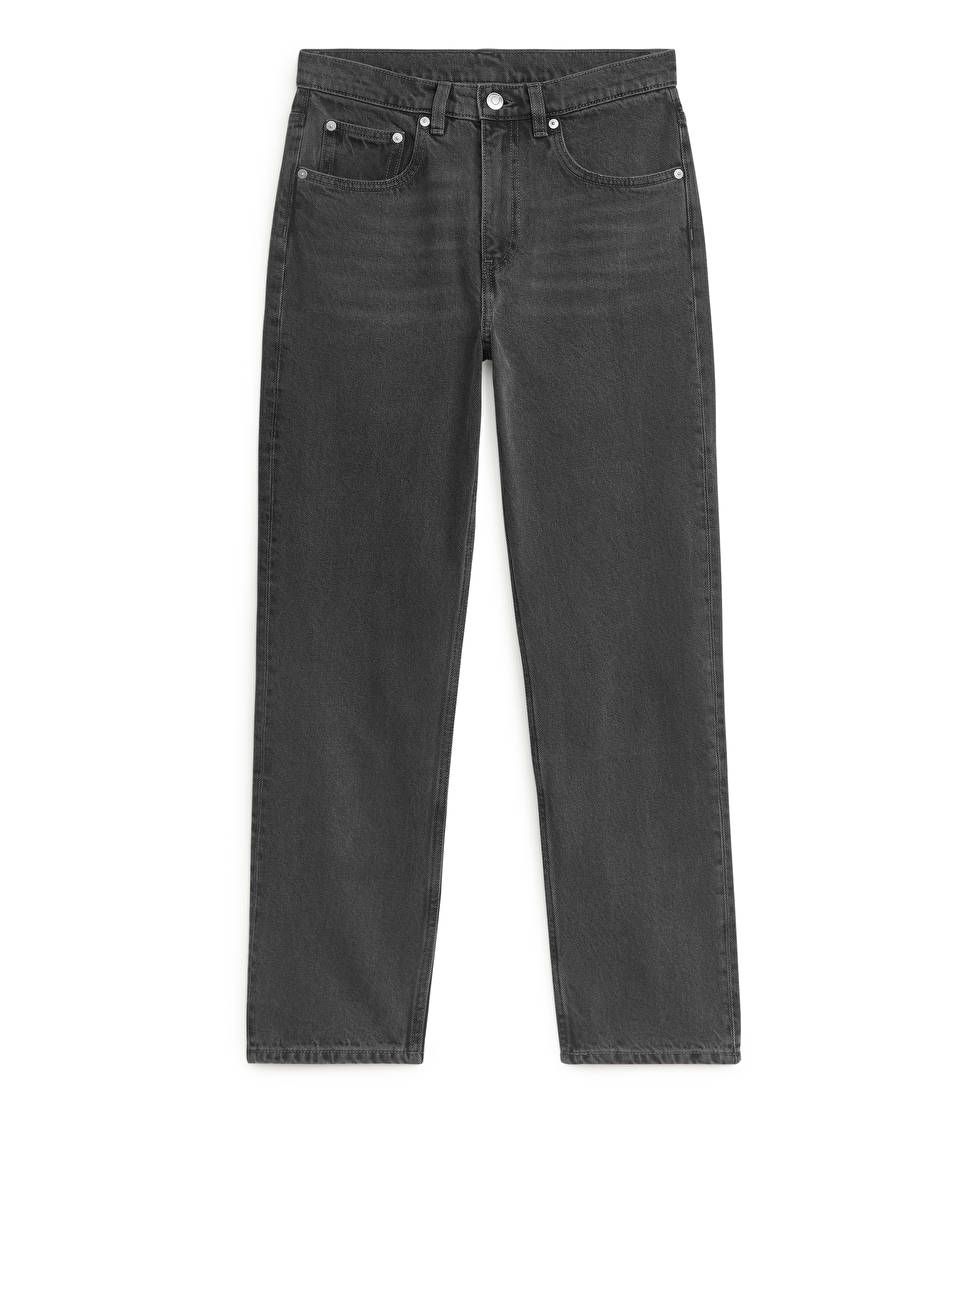 REGULAR CROPPED Non-Stretch Jeans - Washed Black - ARKET GB | ARKET (US&UK)